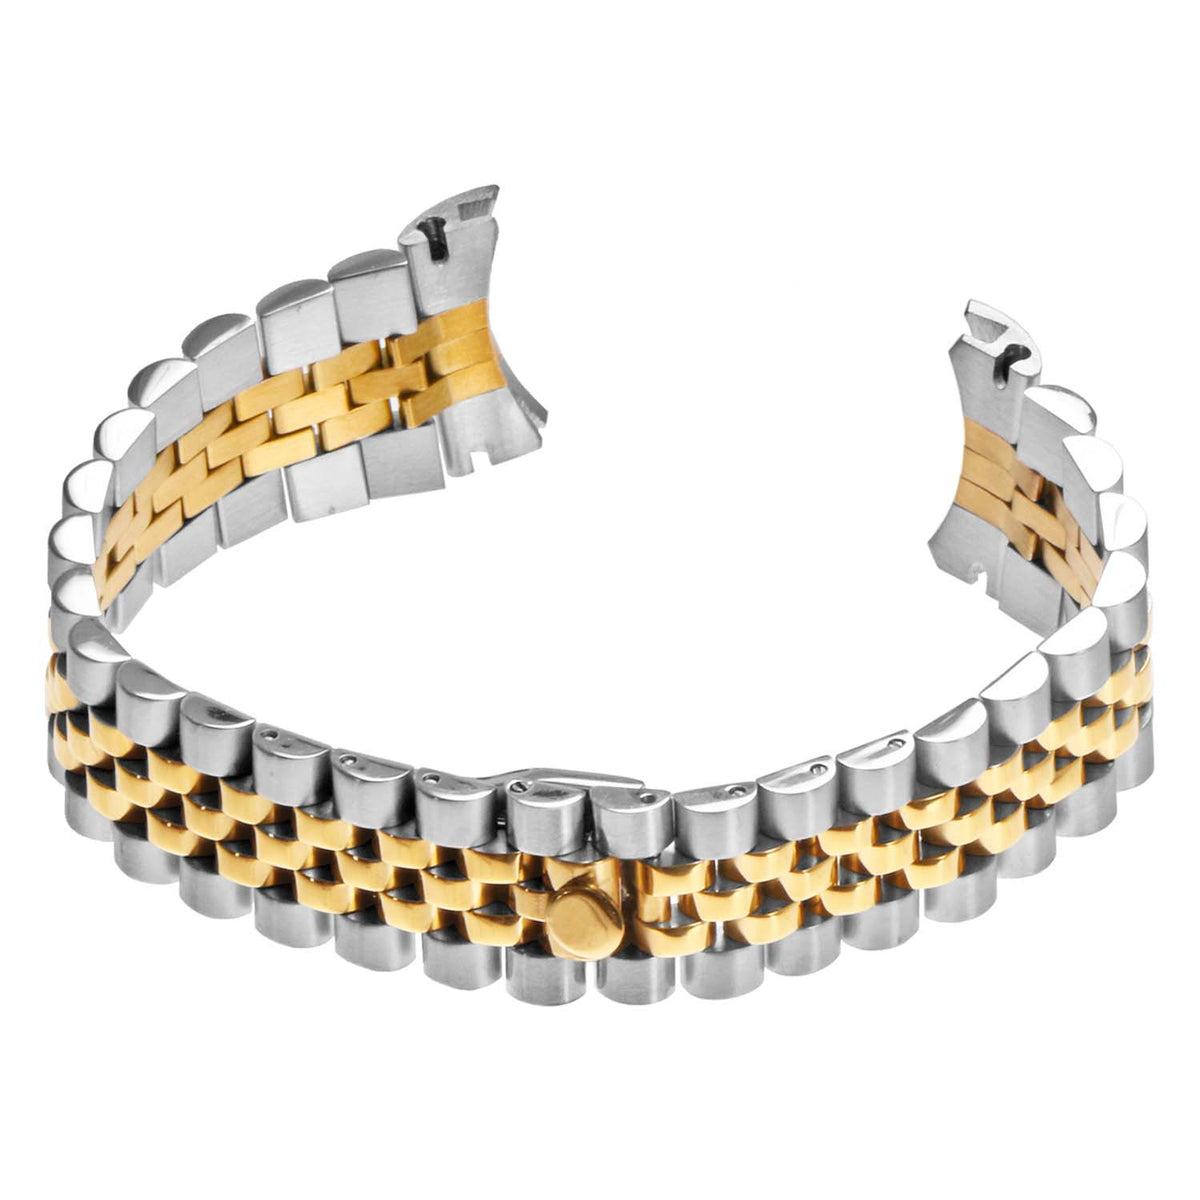 STRAPSCO - Stainless Steel Jubilee Bracelet